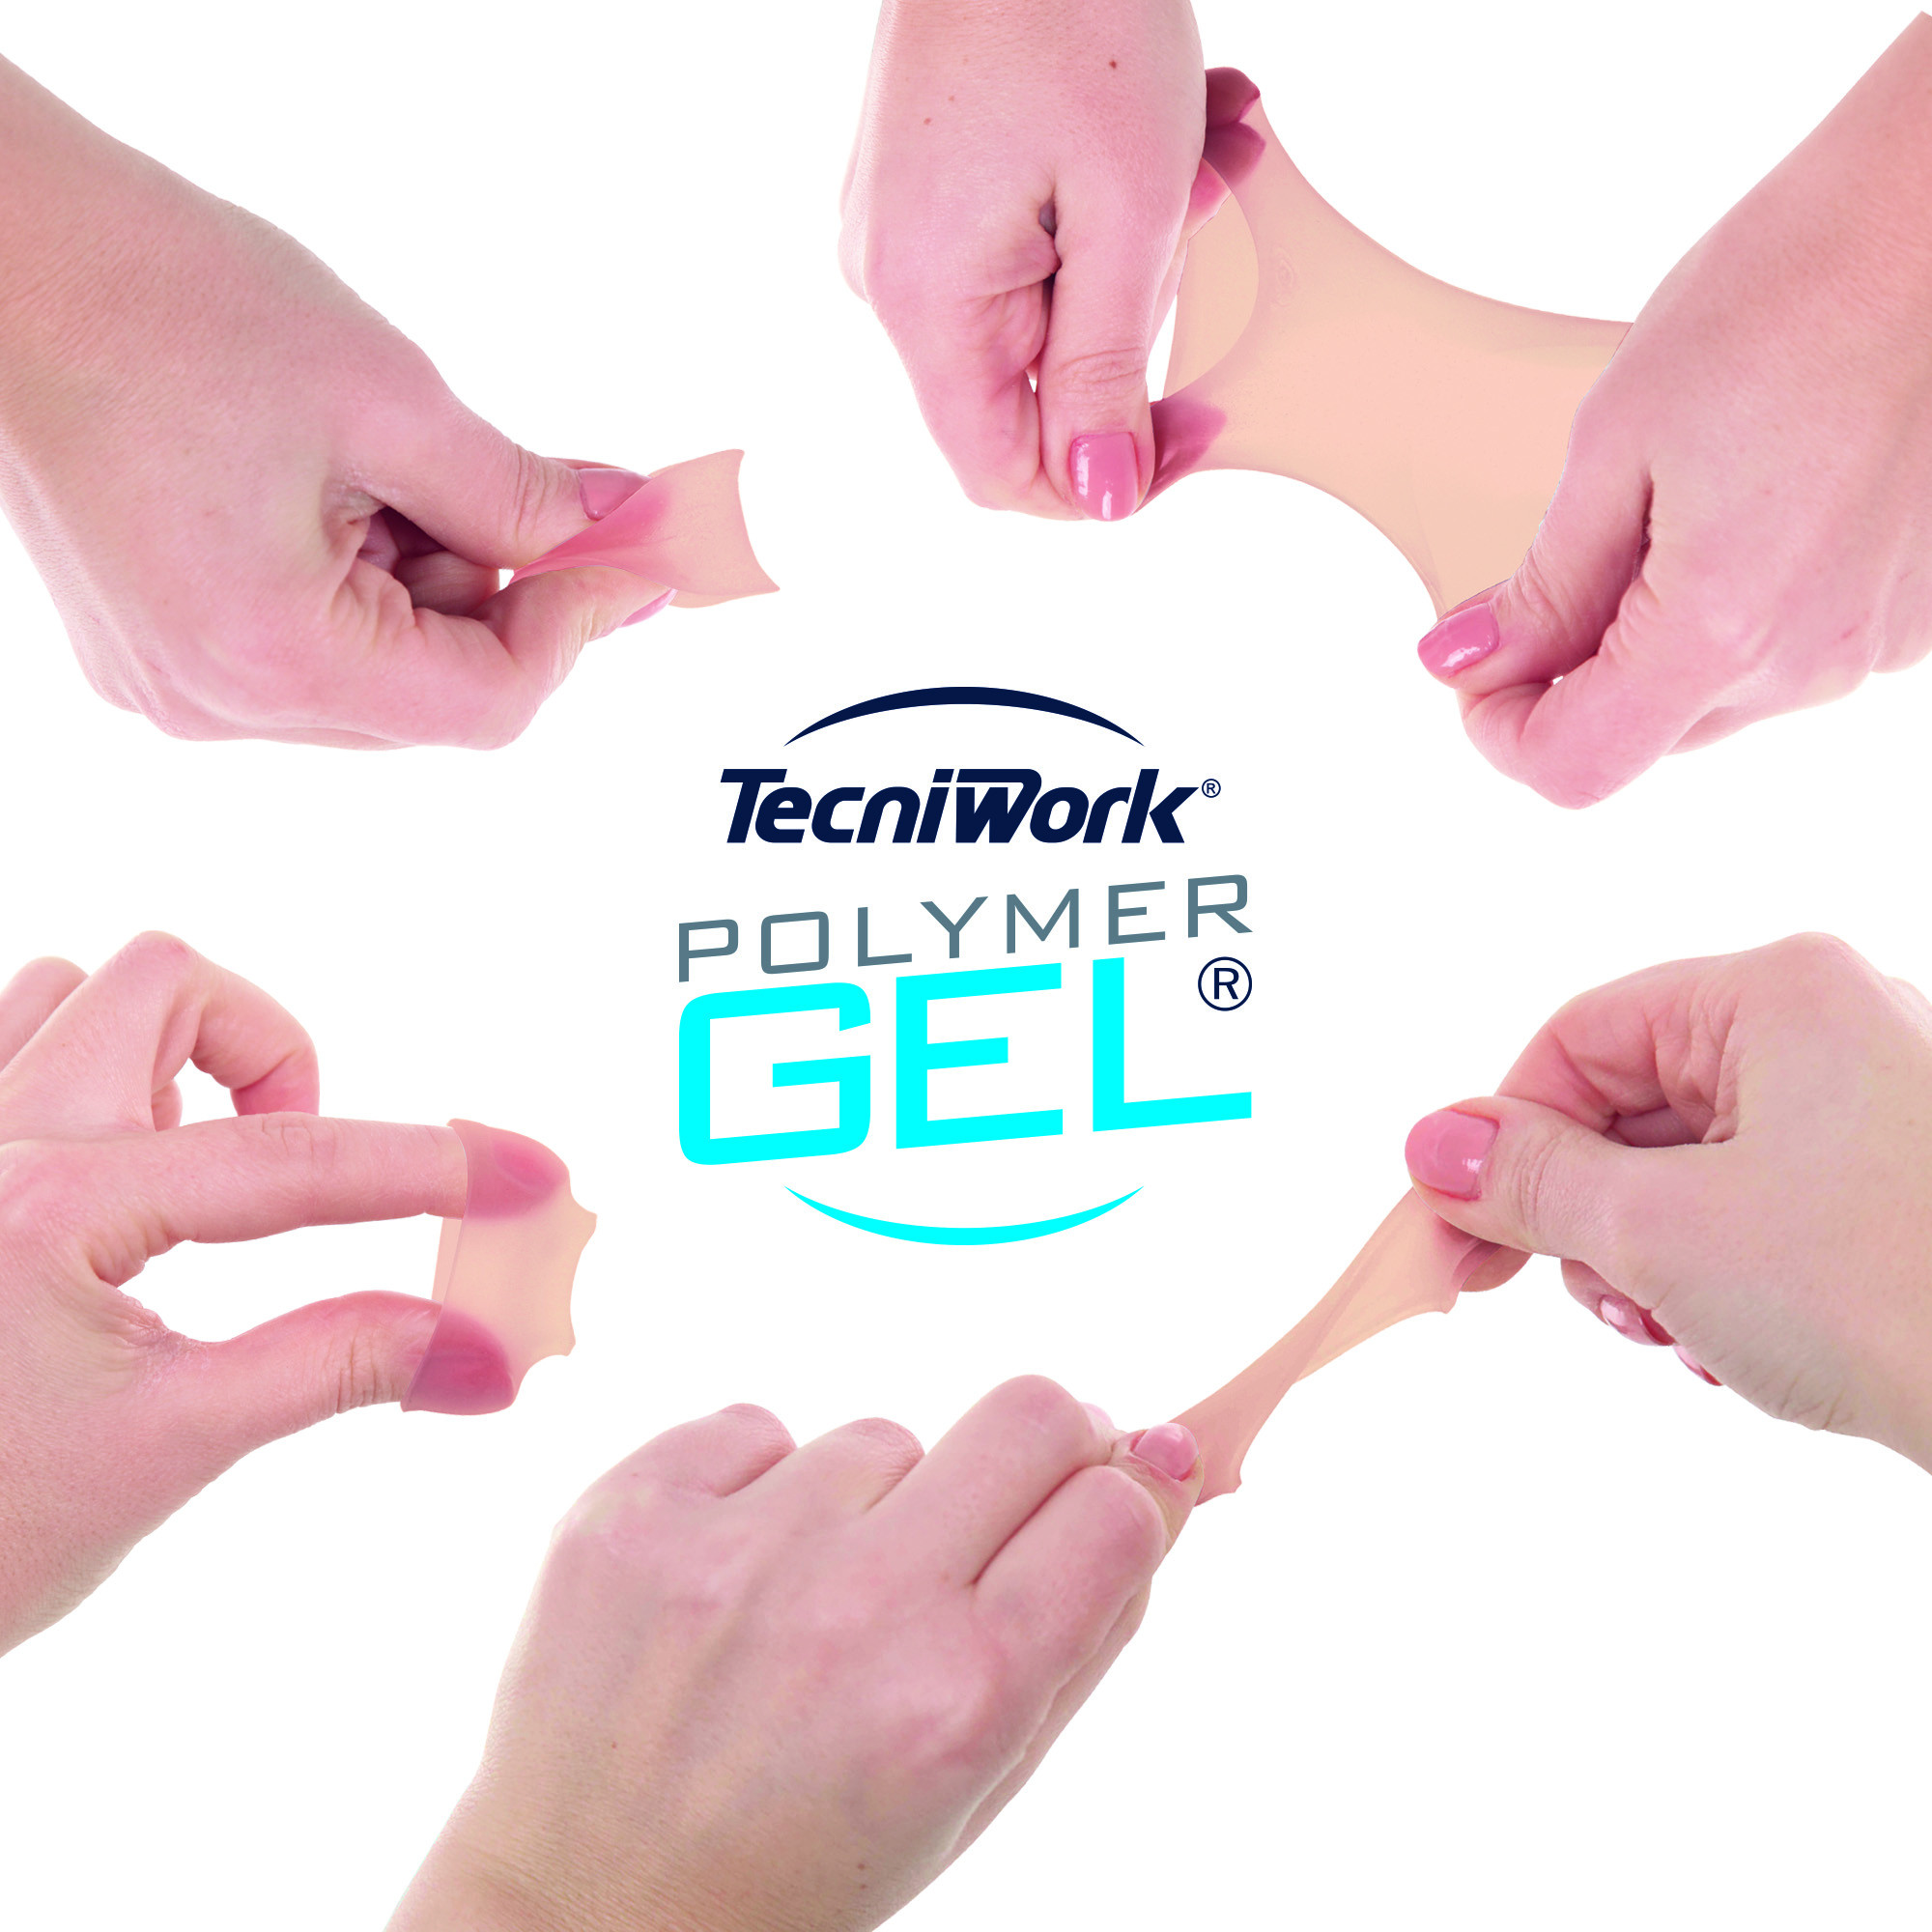 Protezione per dita dei piedi in Tecniwork Polymer Gel  color pelle Bio-Skin misura Small 1 pz